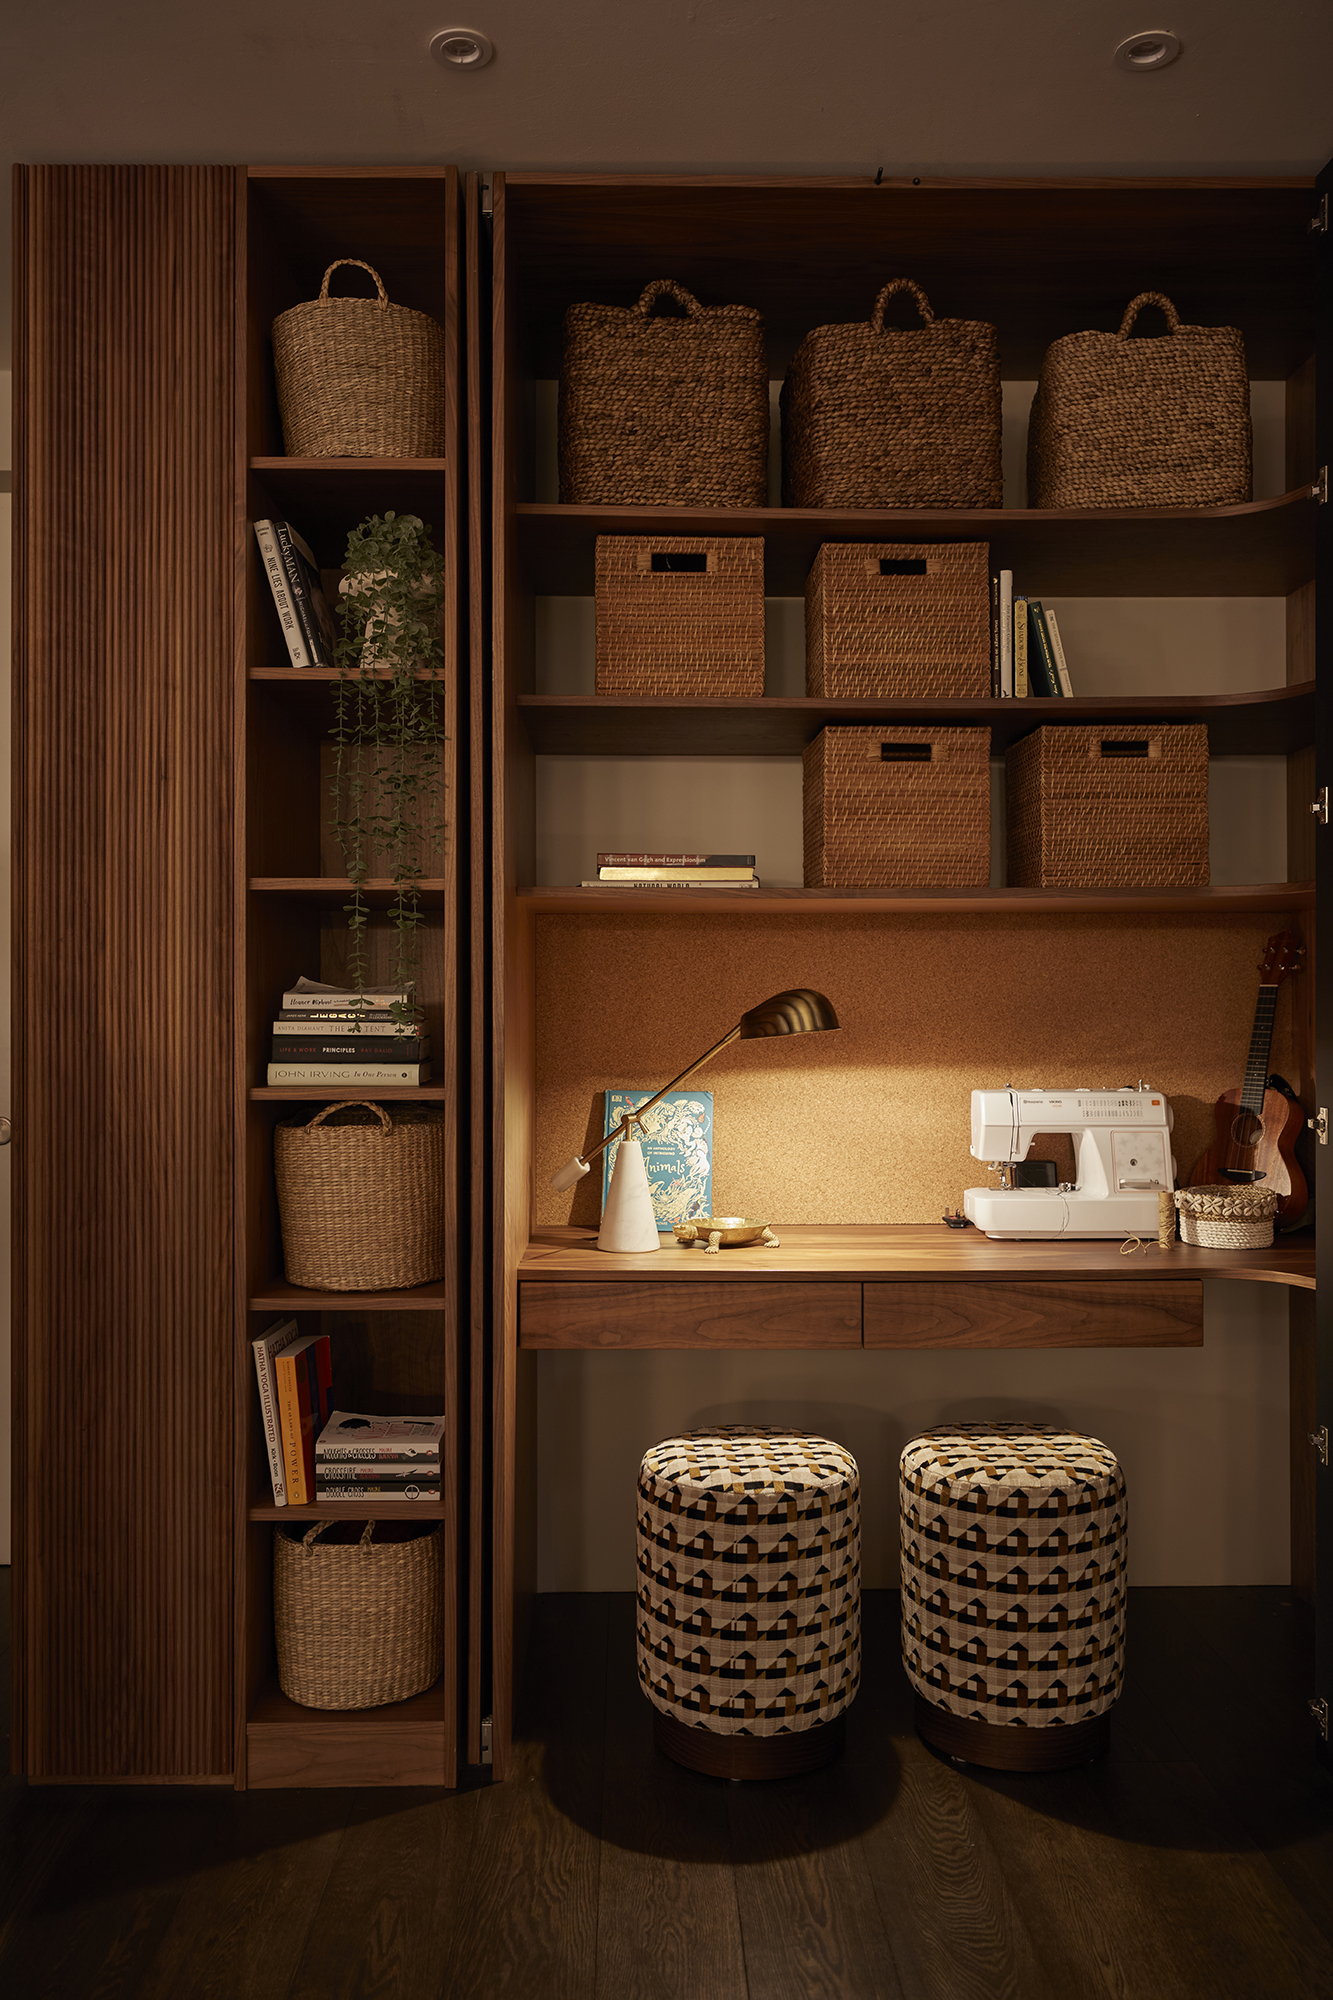 cozy wooden desk, storage organization, warm lighting